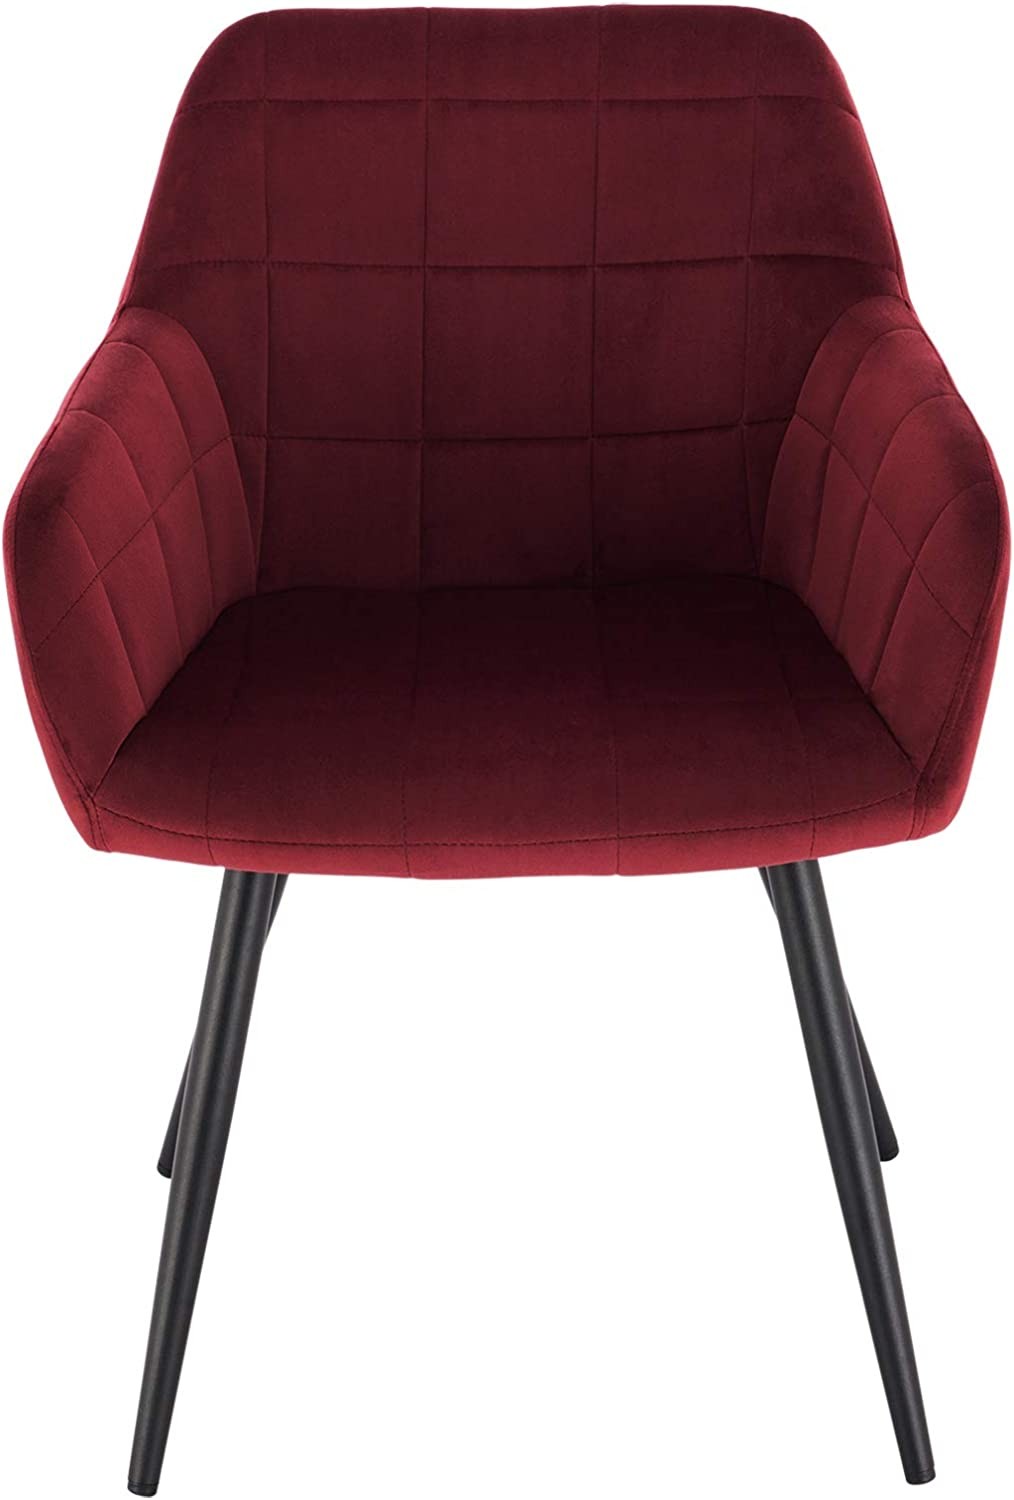 6 x Esszimmerstühle 6er Set Esszimmerstuhl Küchenstuhl Polsterstuhl Design  Stuhl mit Armlehnen, mit Sitzfläche aus Samt, Gestell aus Metall | Stühle